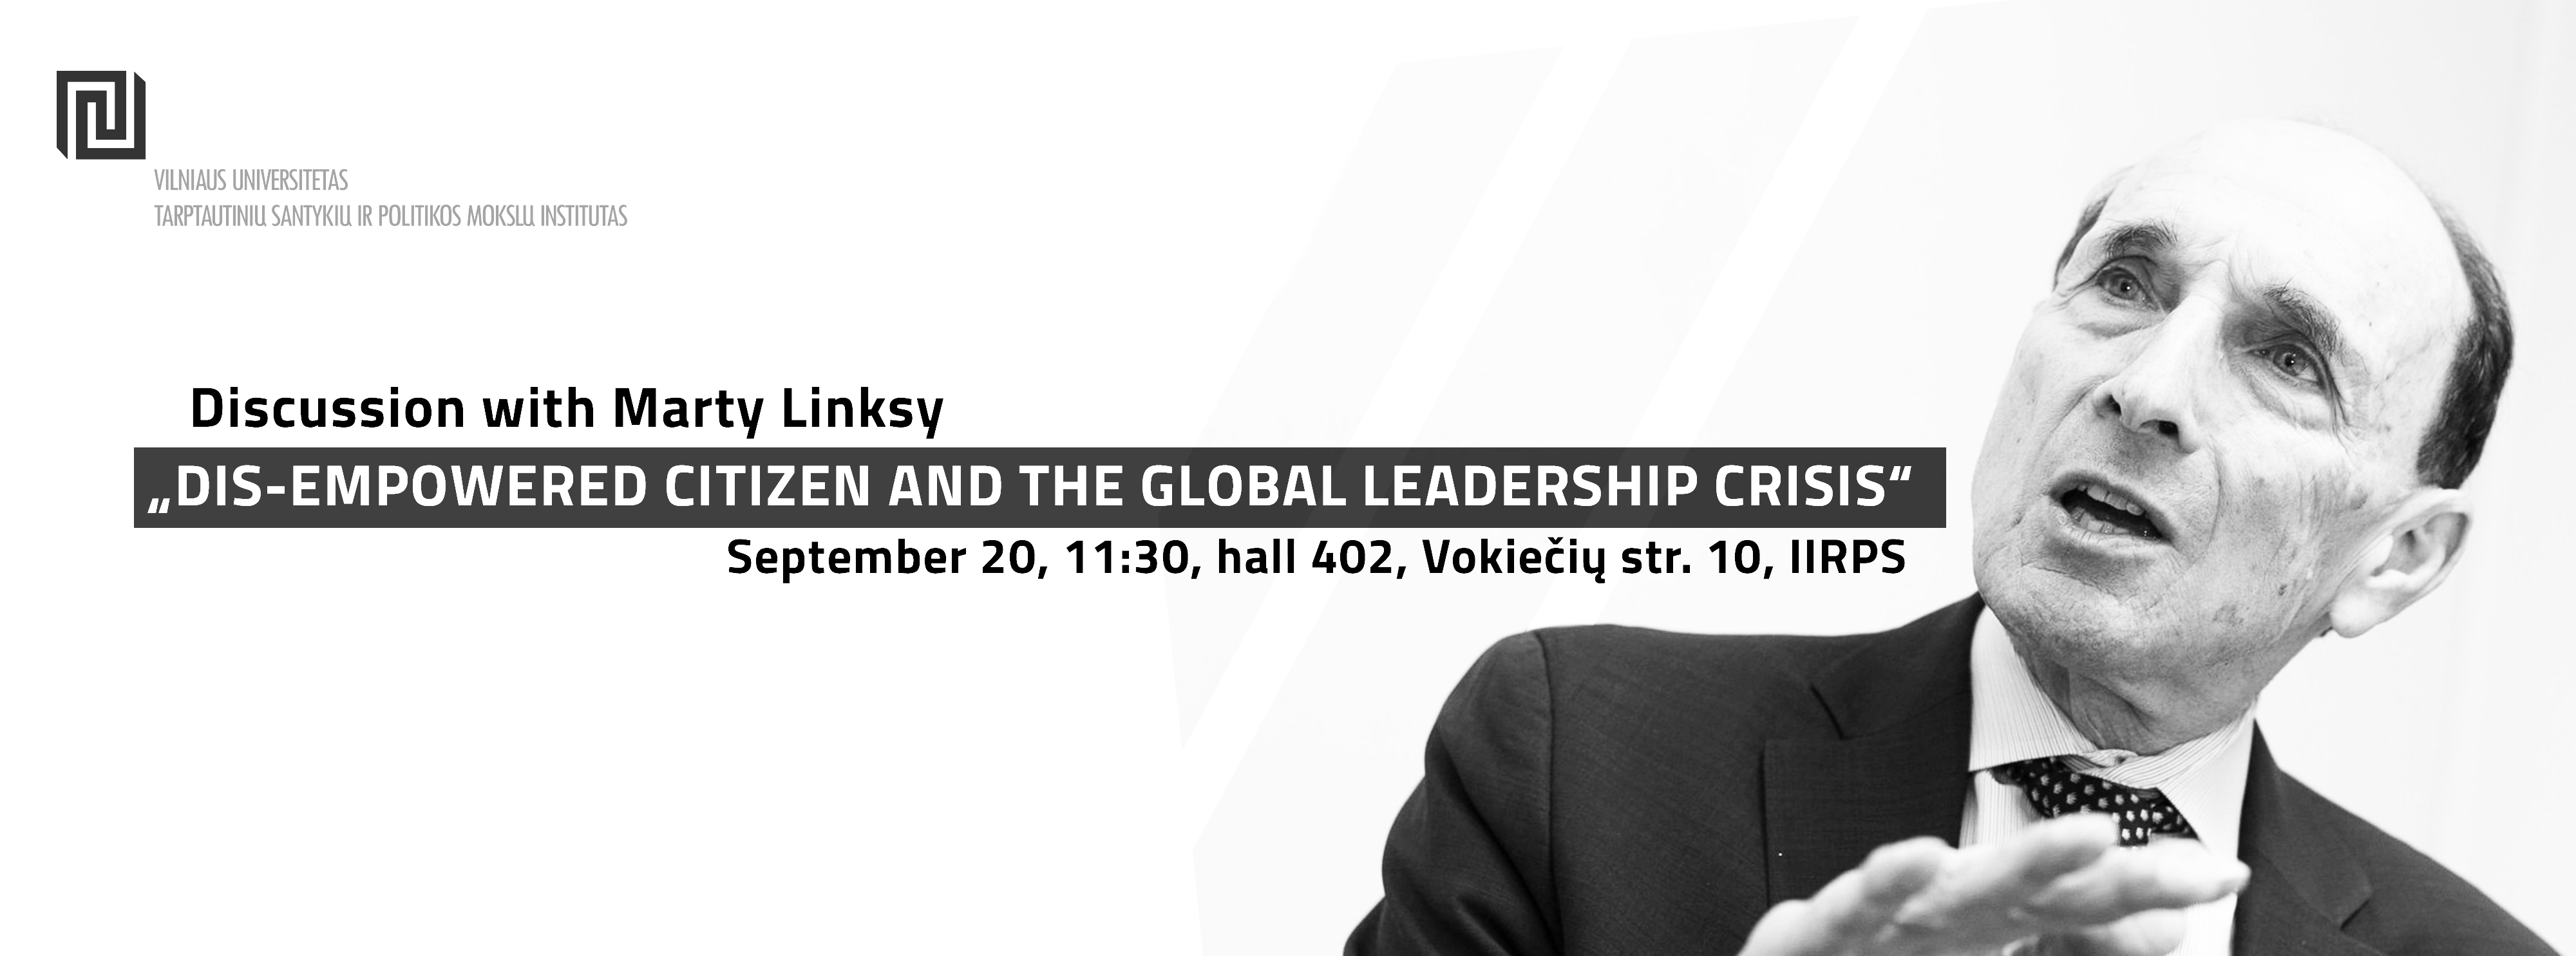 Diskusija „Nuvilti piliečiai ir globalios lyderystės krizė” su M. Linsky